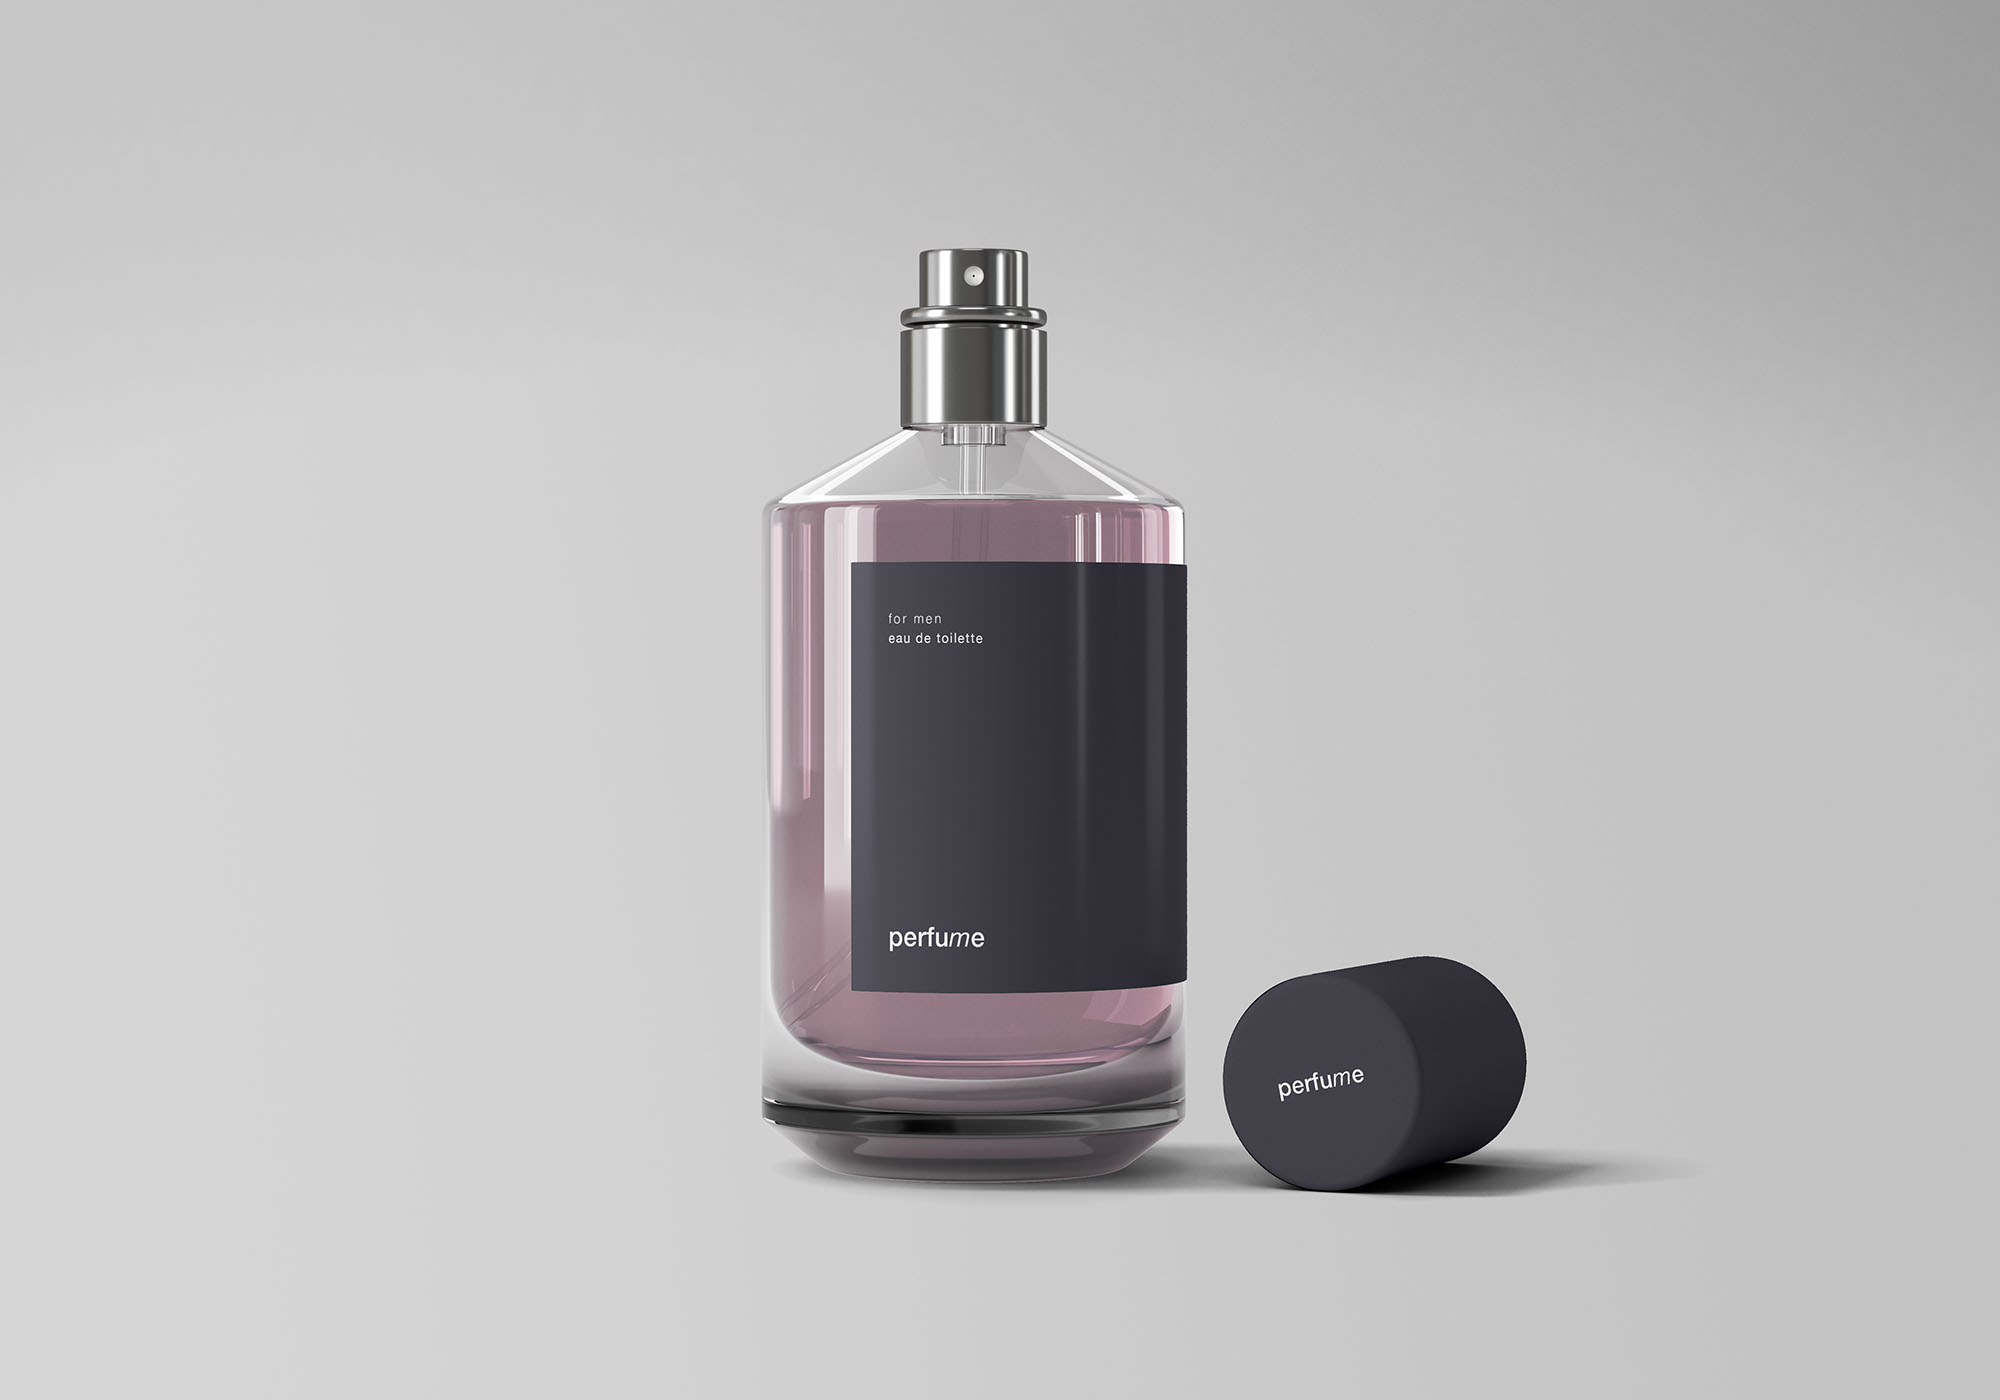 经典香水瓶产品外观设计展示第一素材精选 Classic Perfume Mockup插图